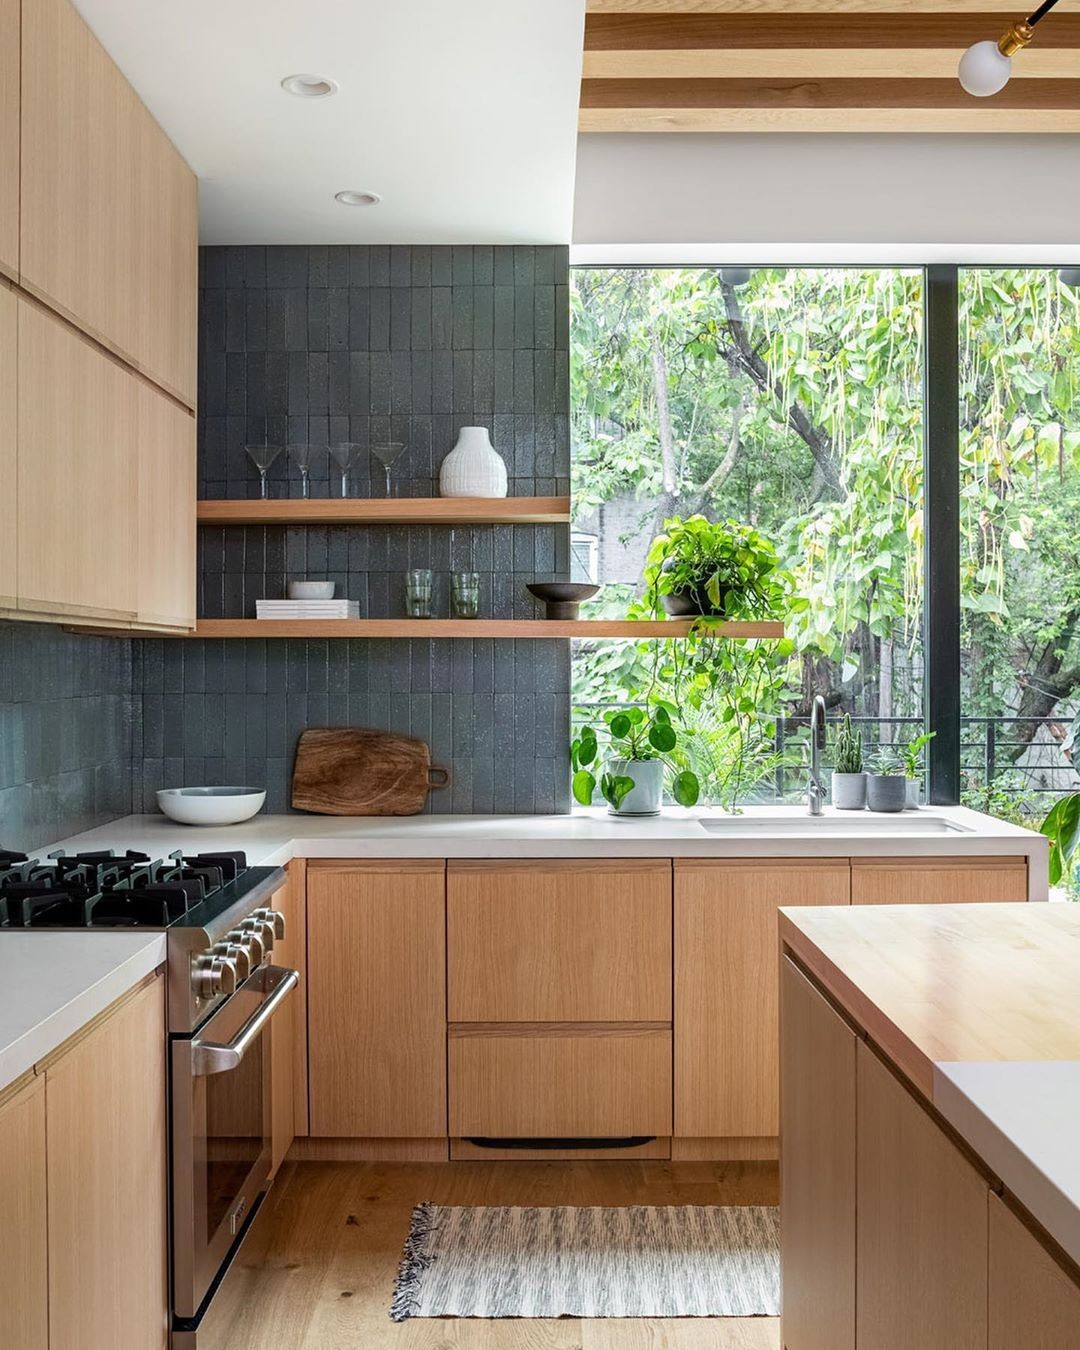 Cozinha com tapete: 5 ambientes com diferentes estilos para você se inspirar! (Foto: Divulgação)